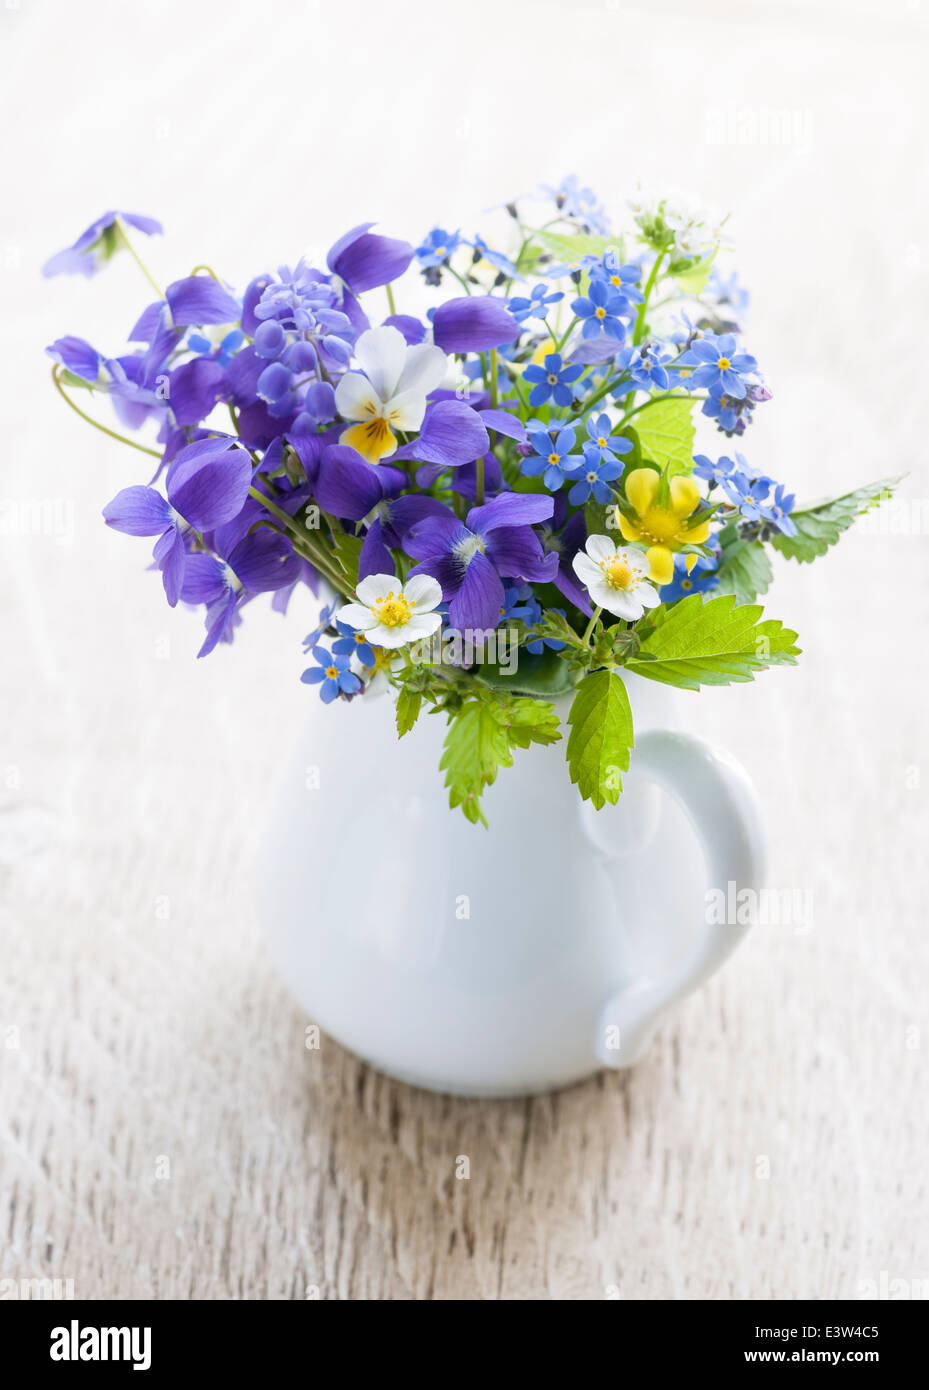 Bouquet de fleurs sauvages en vase blanc sur bois background, studio shot Banque D'Images